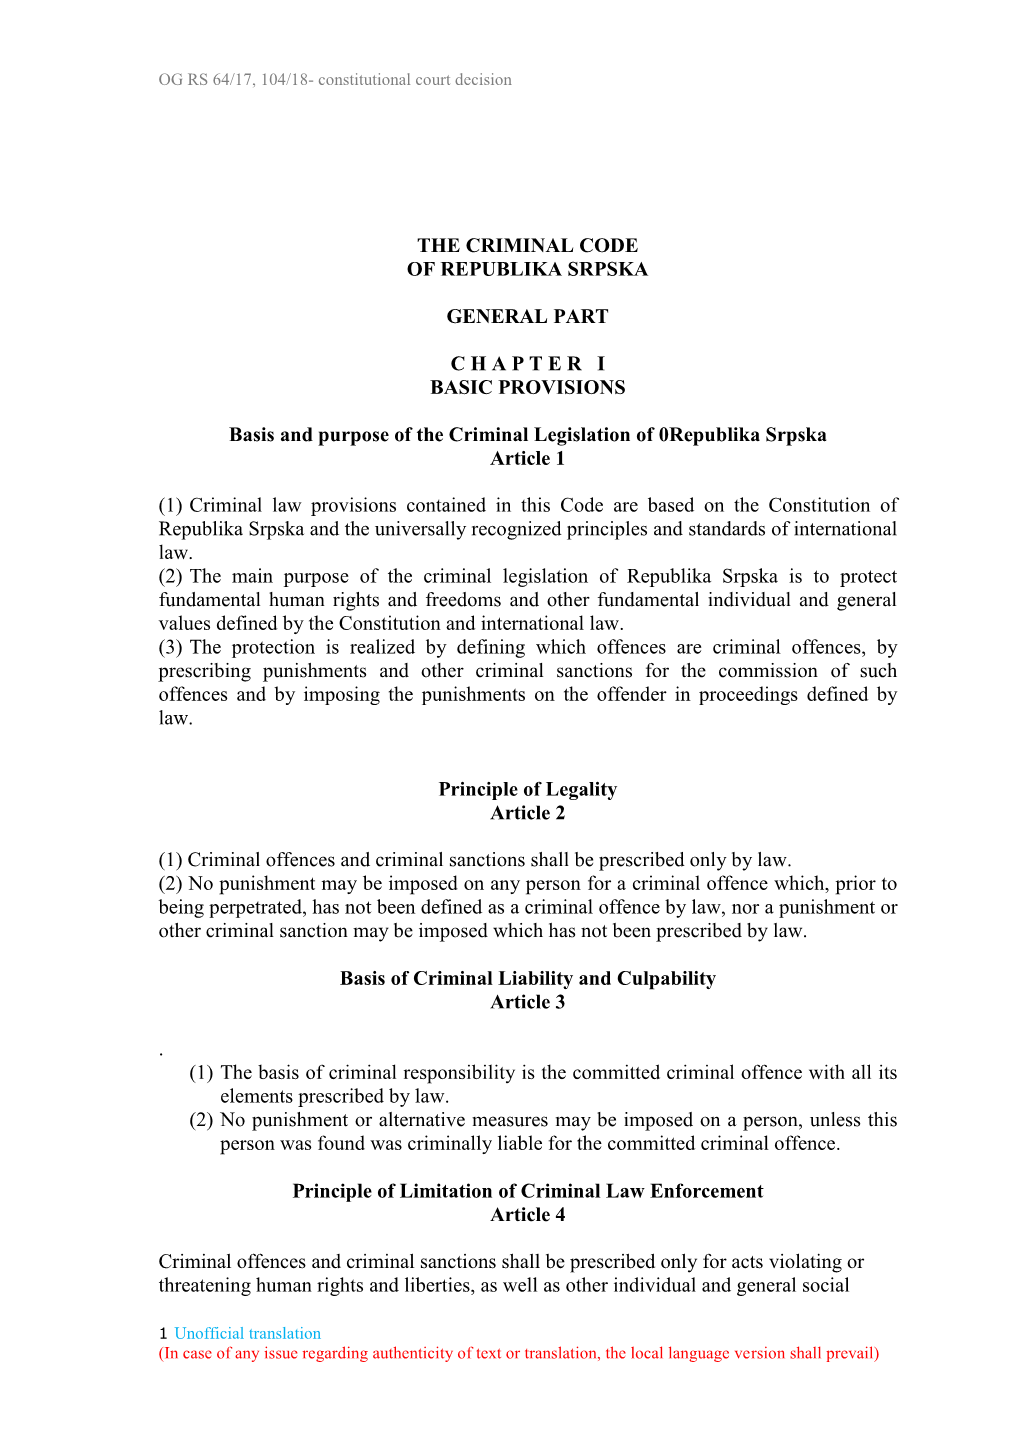 Criminal Code of Republika Srpska